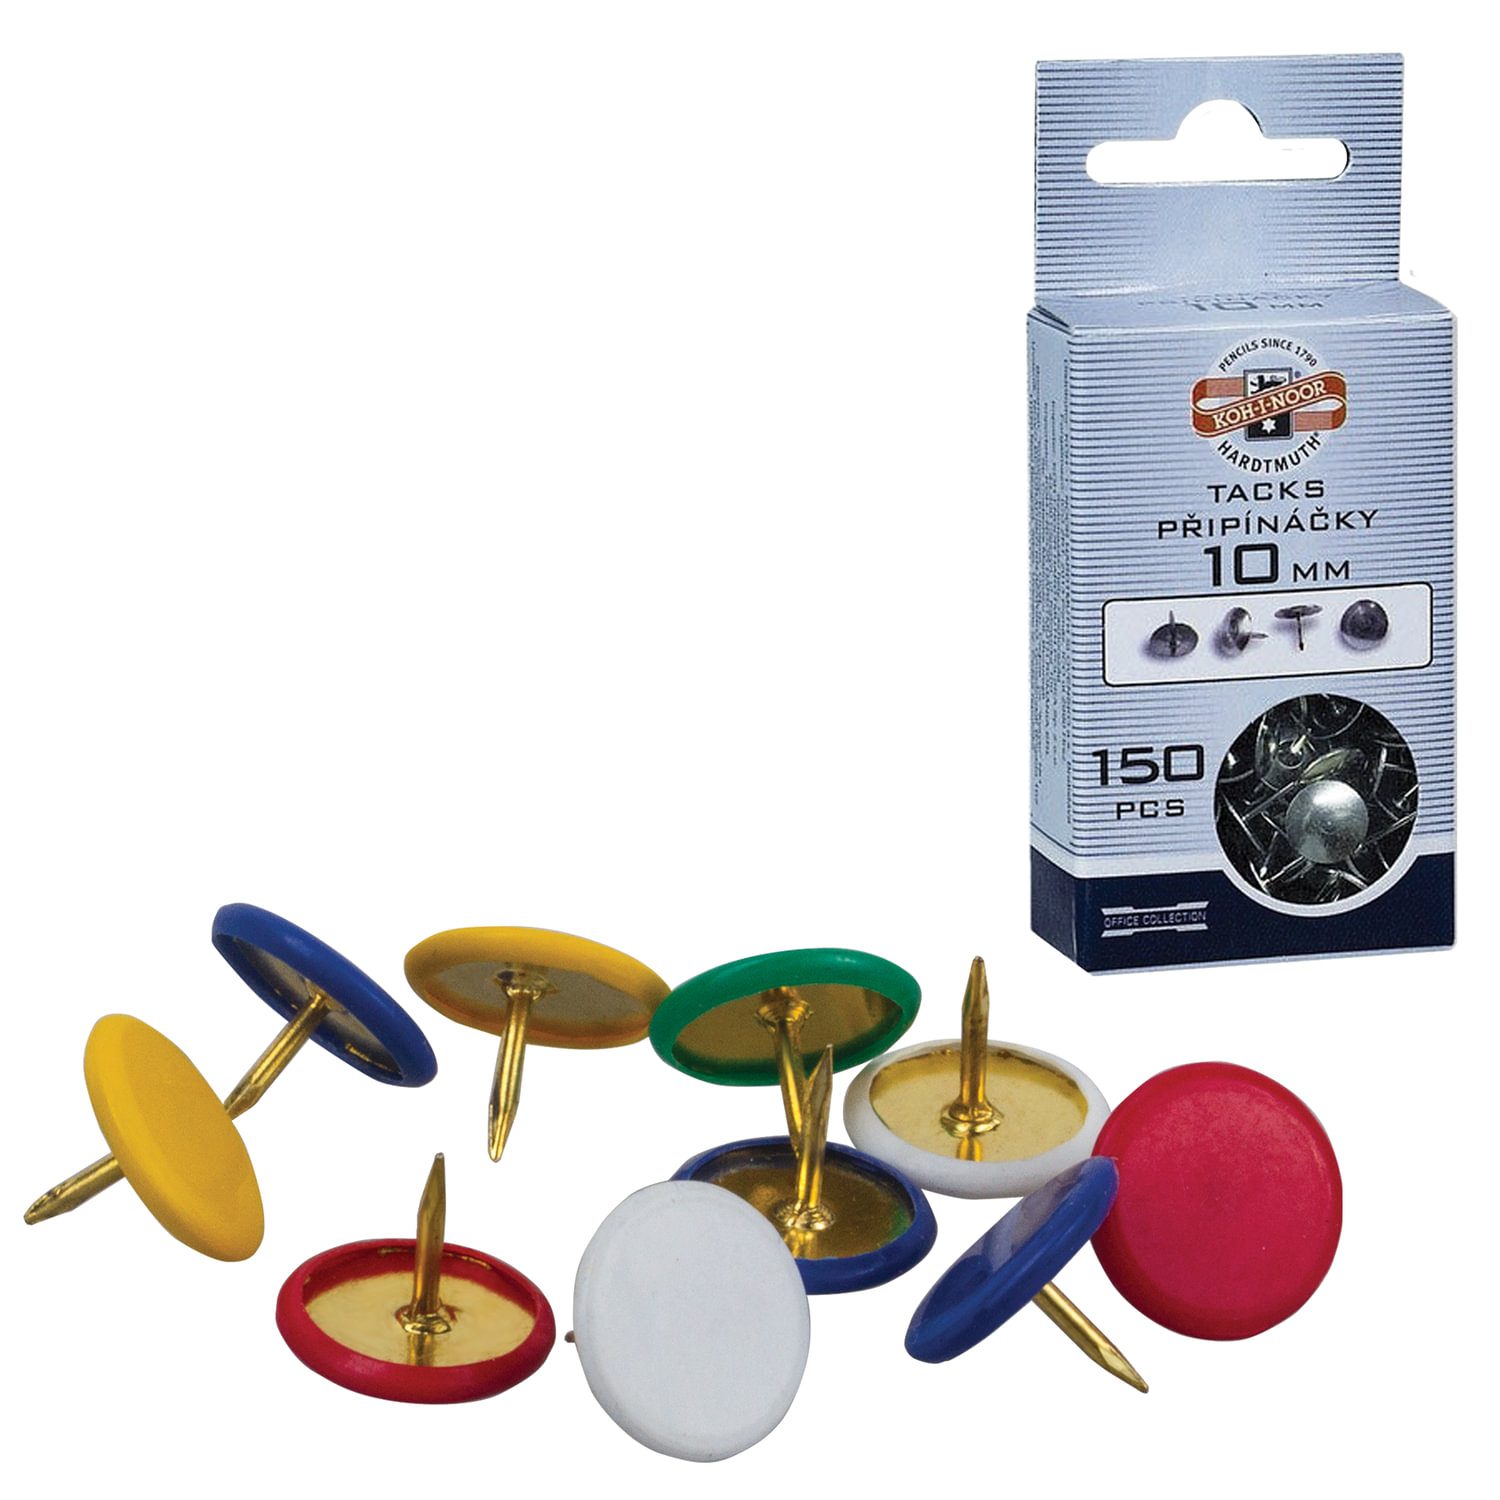 Кнопки канцелярские KOH-I-NOOR, металлические, цветные, 11 мм, 50 шт .